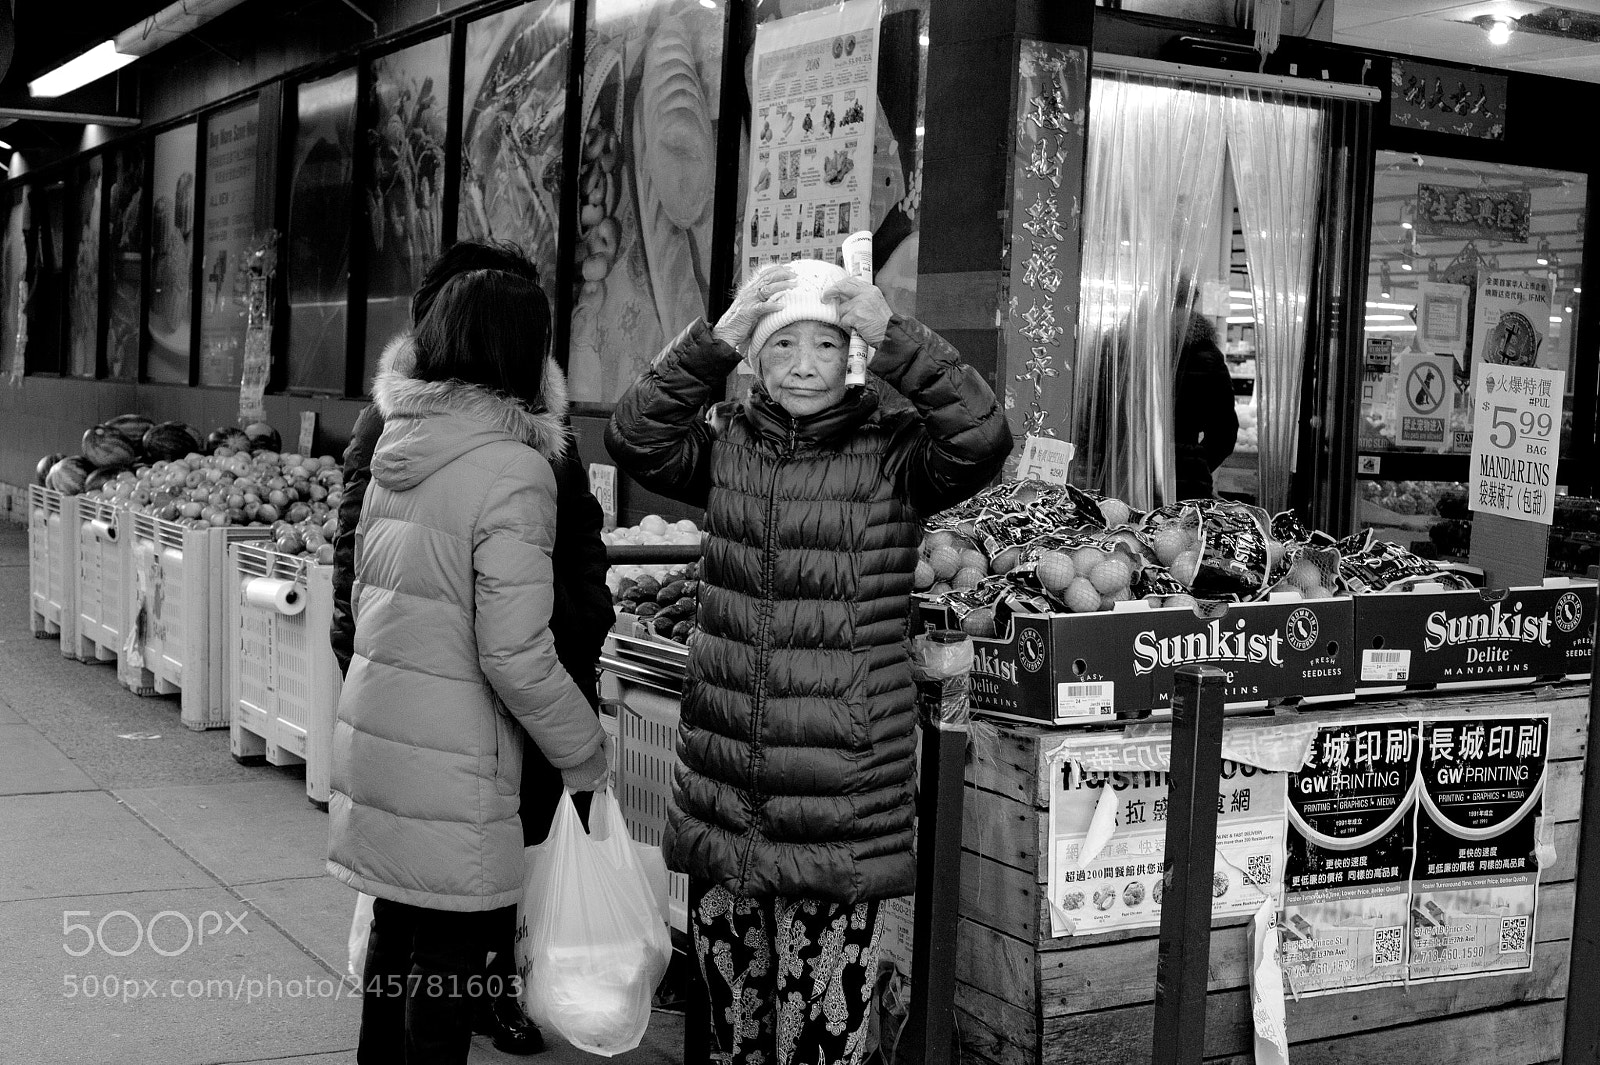 Nikon D700 sample photo. Old woman at a photography